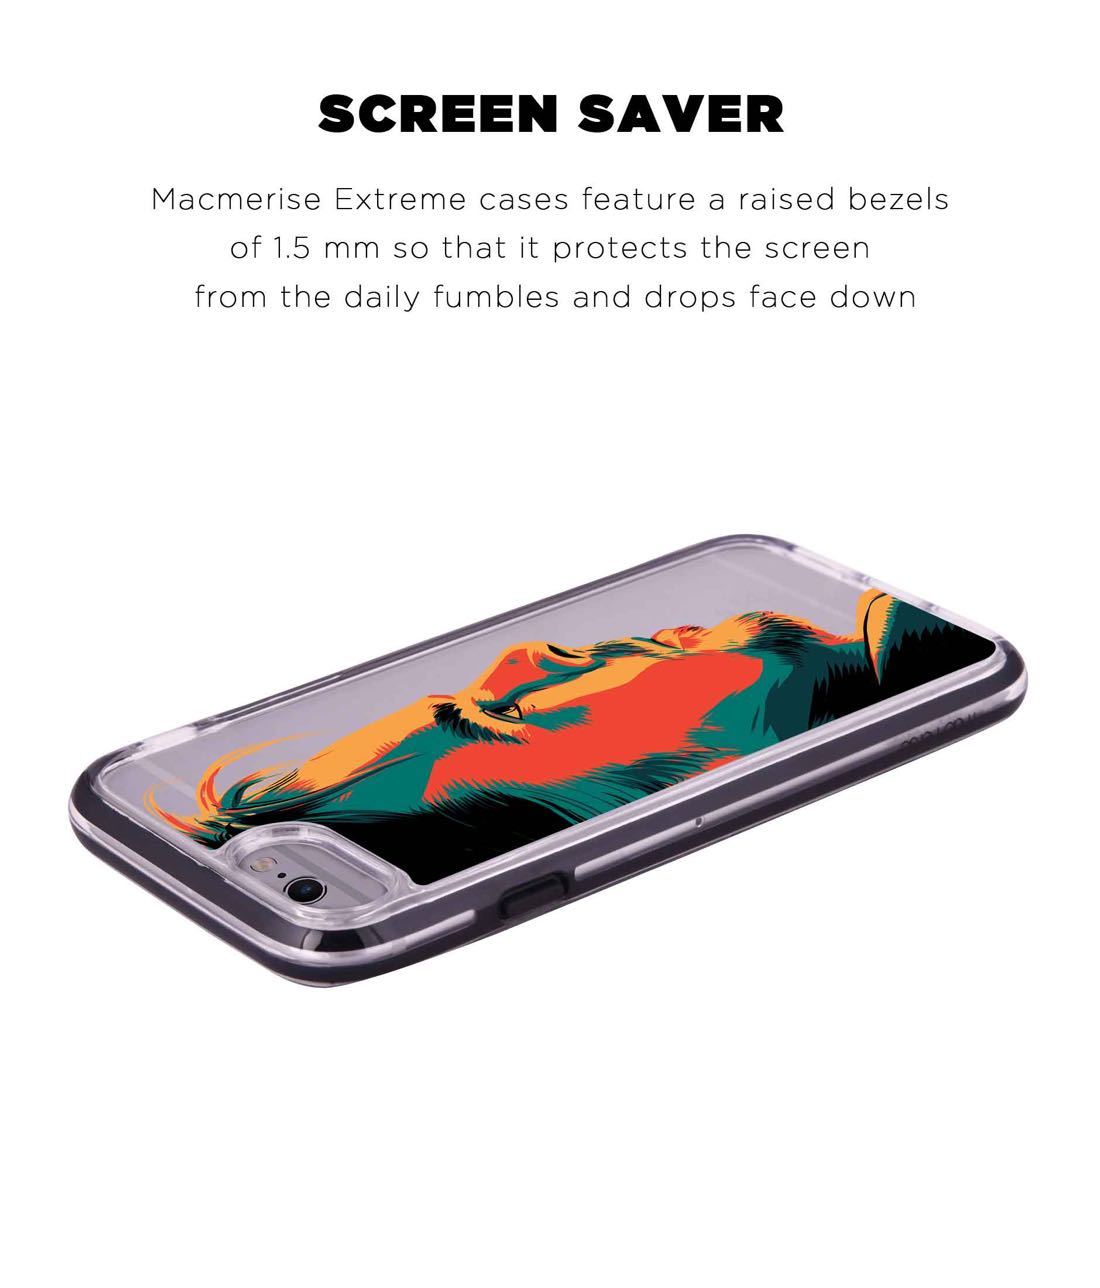 Illuminated Doctor Strange - Extreme Phone Case for iPhone 6 Plus